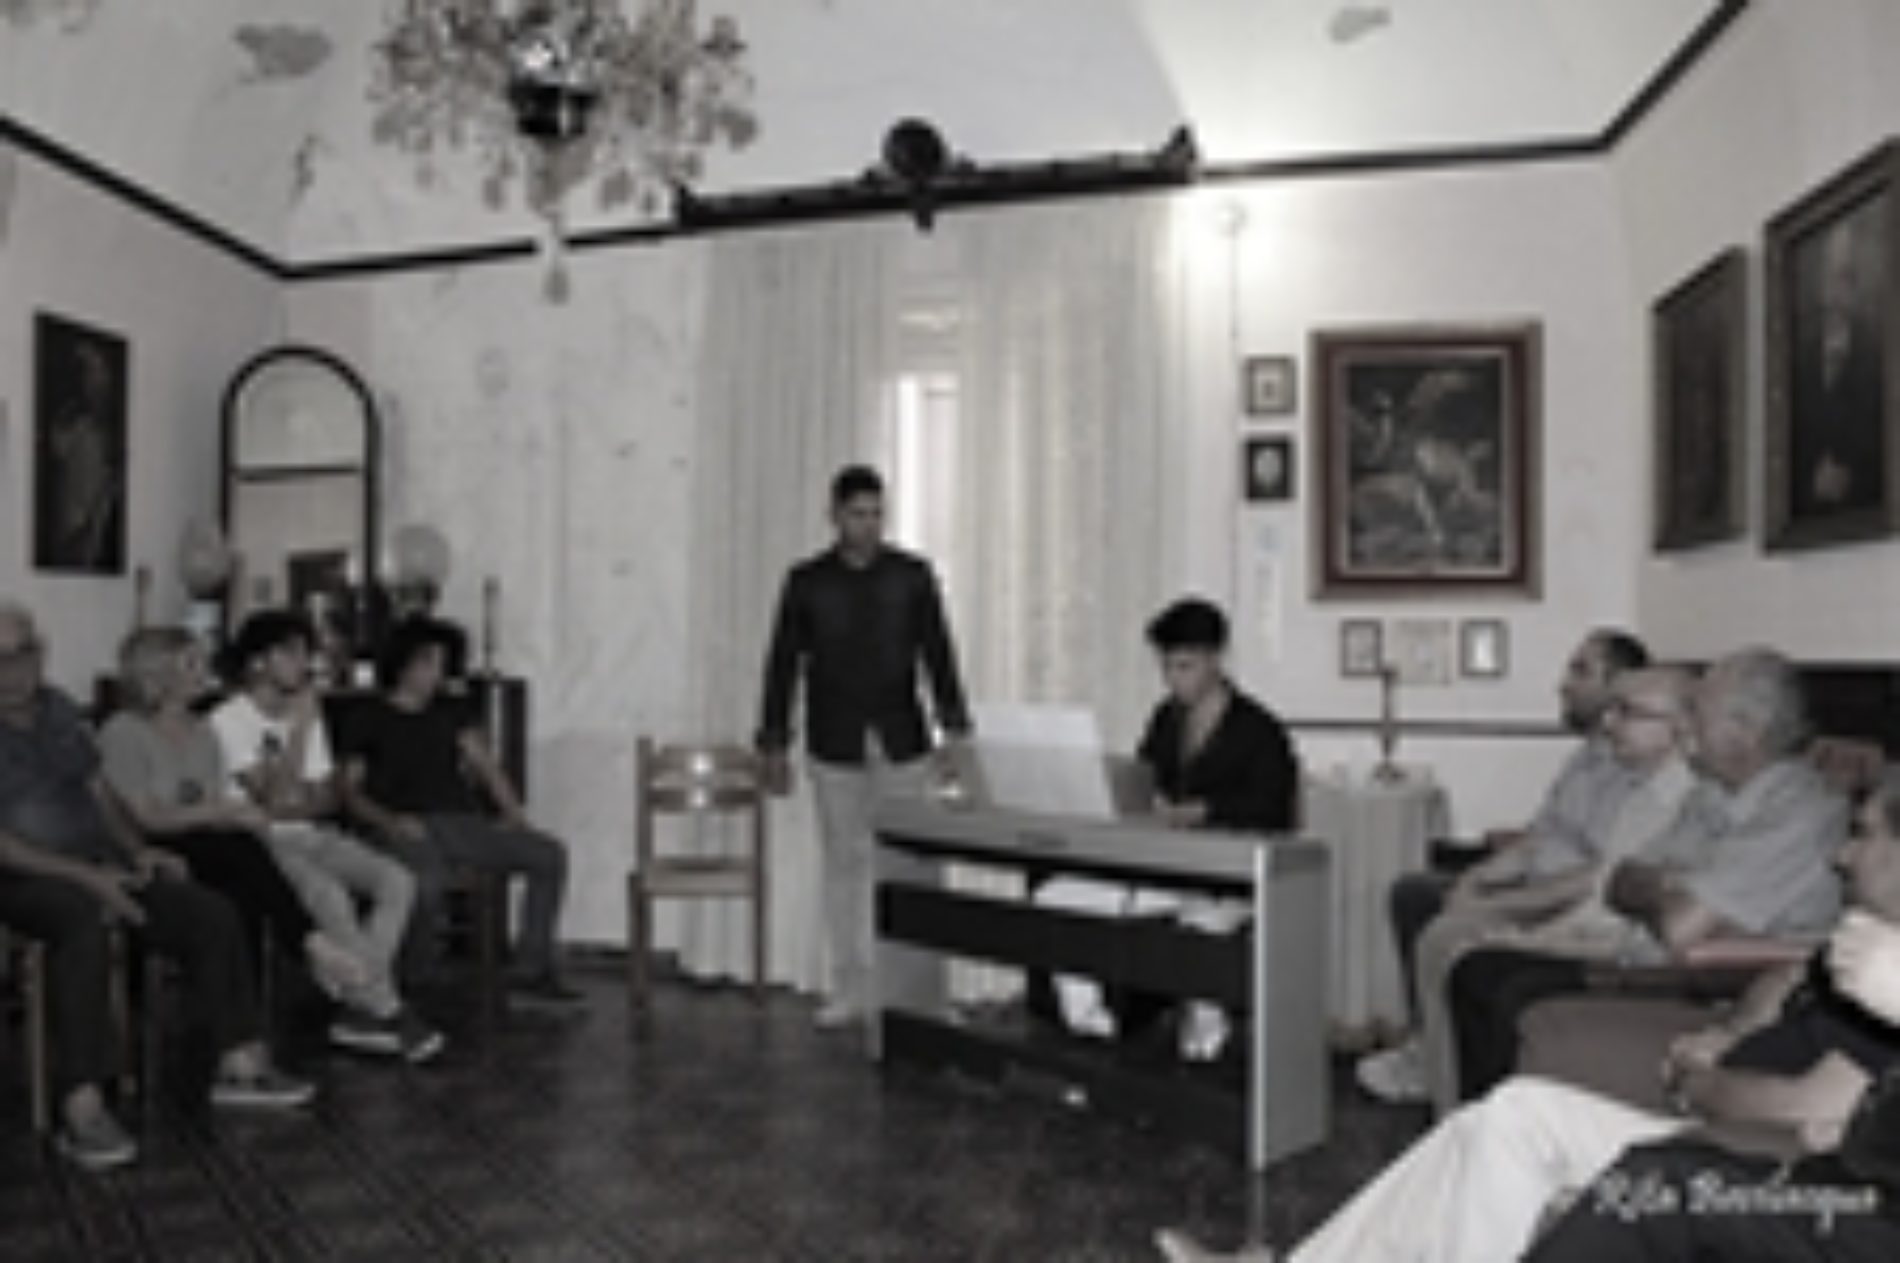 Il Salotto artistico-letterario “Civico 49” ospita il giovane baritono Erald Stellino